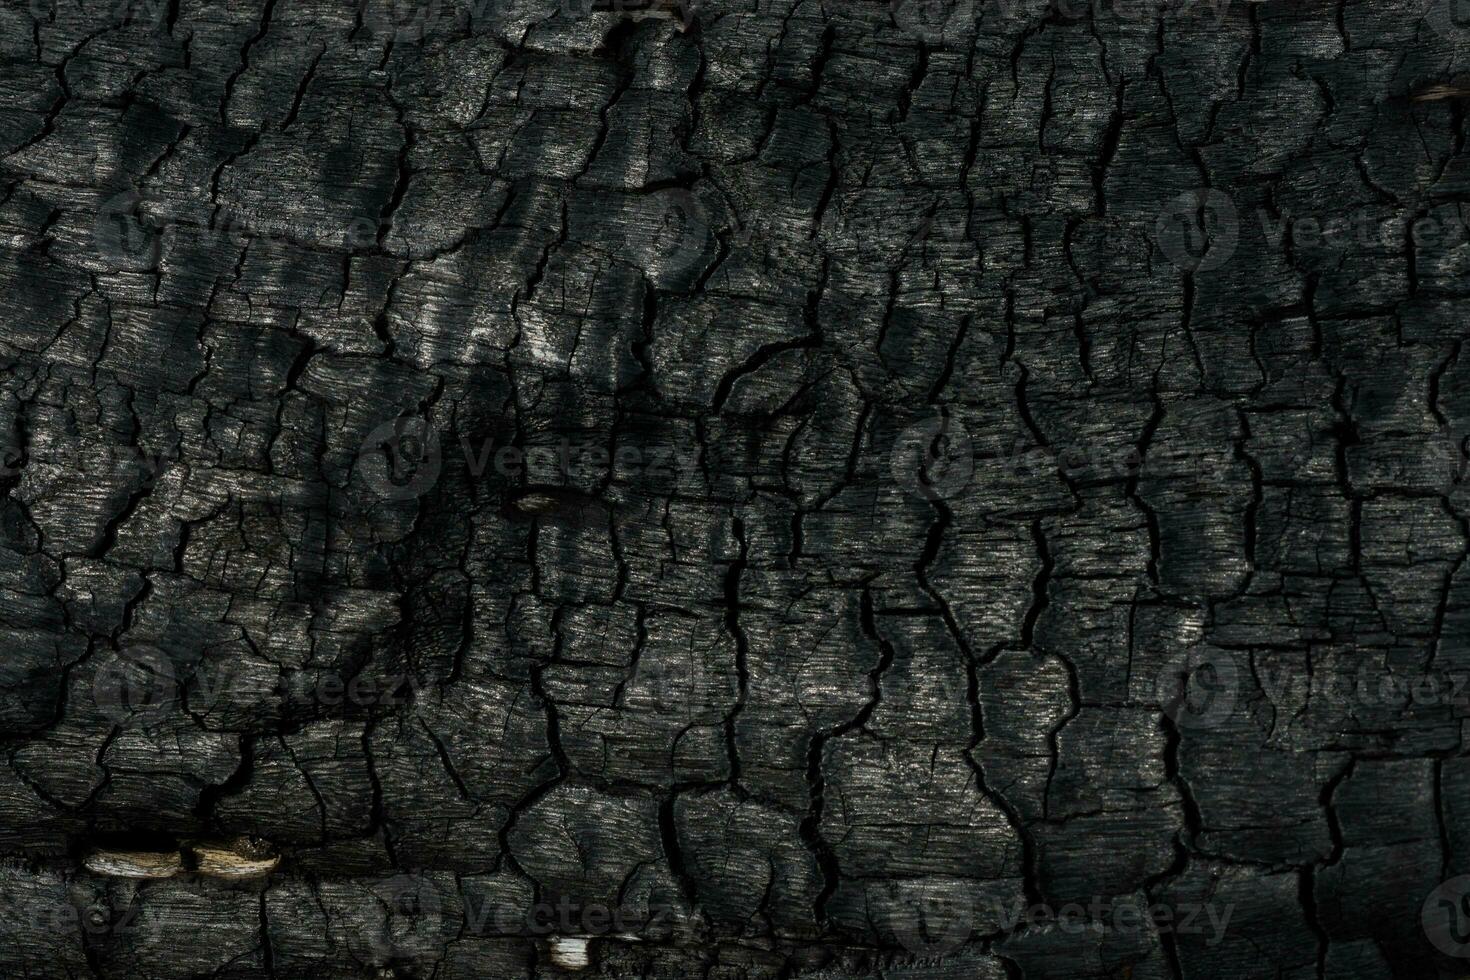 détails sur le surface de charbon. photo